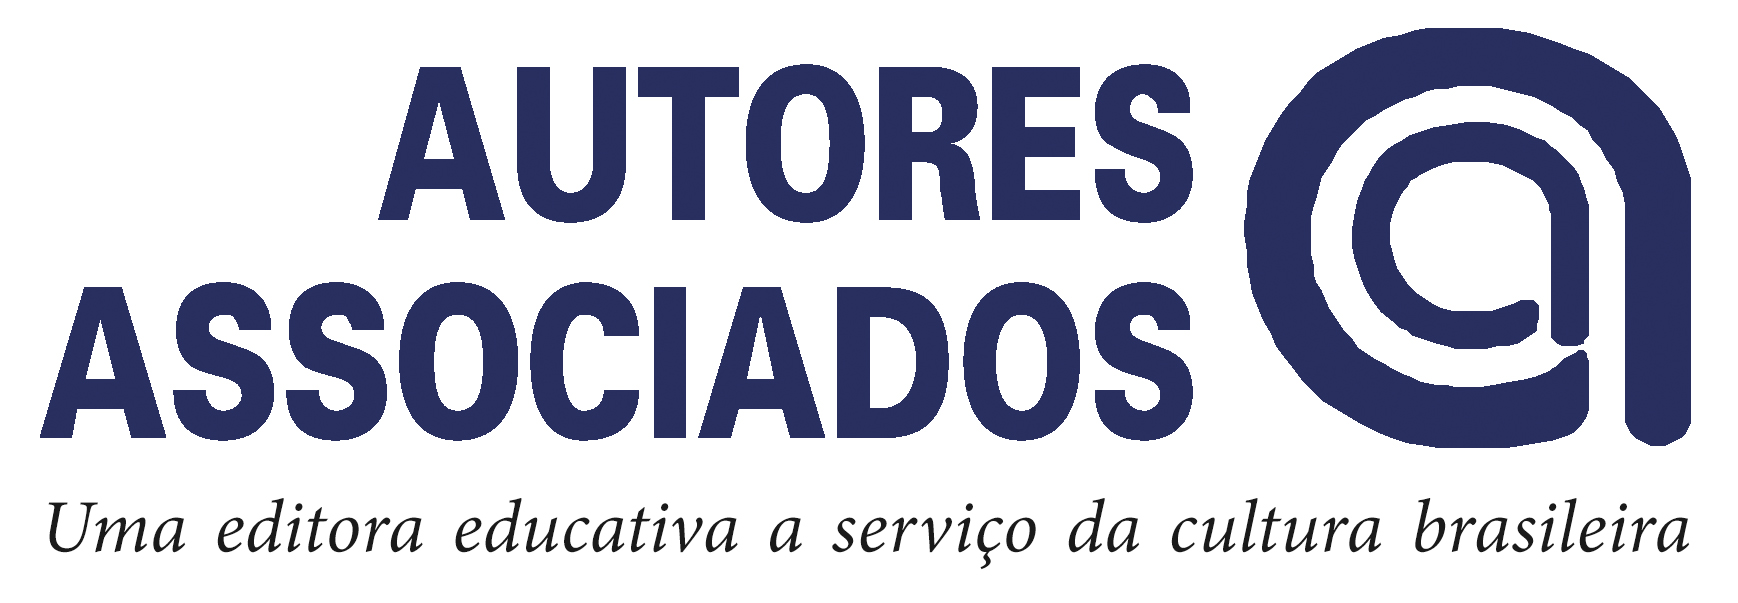 logo AUTORES ASSOCIADOS 